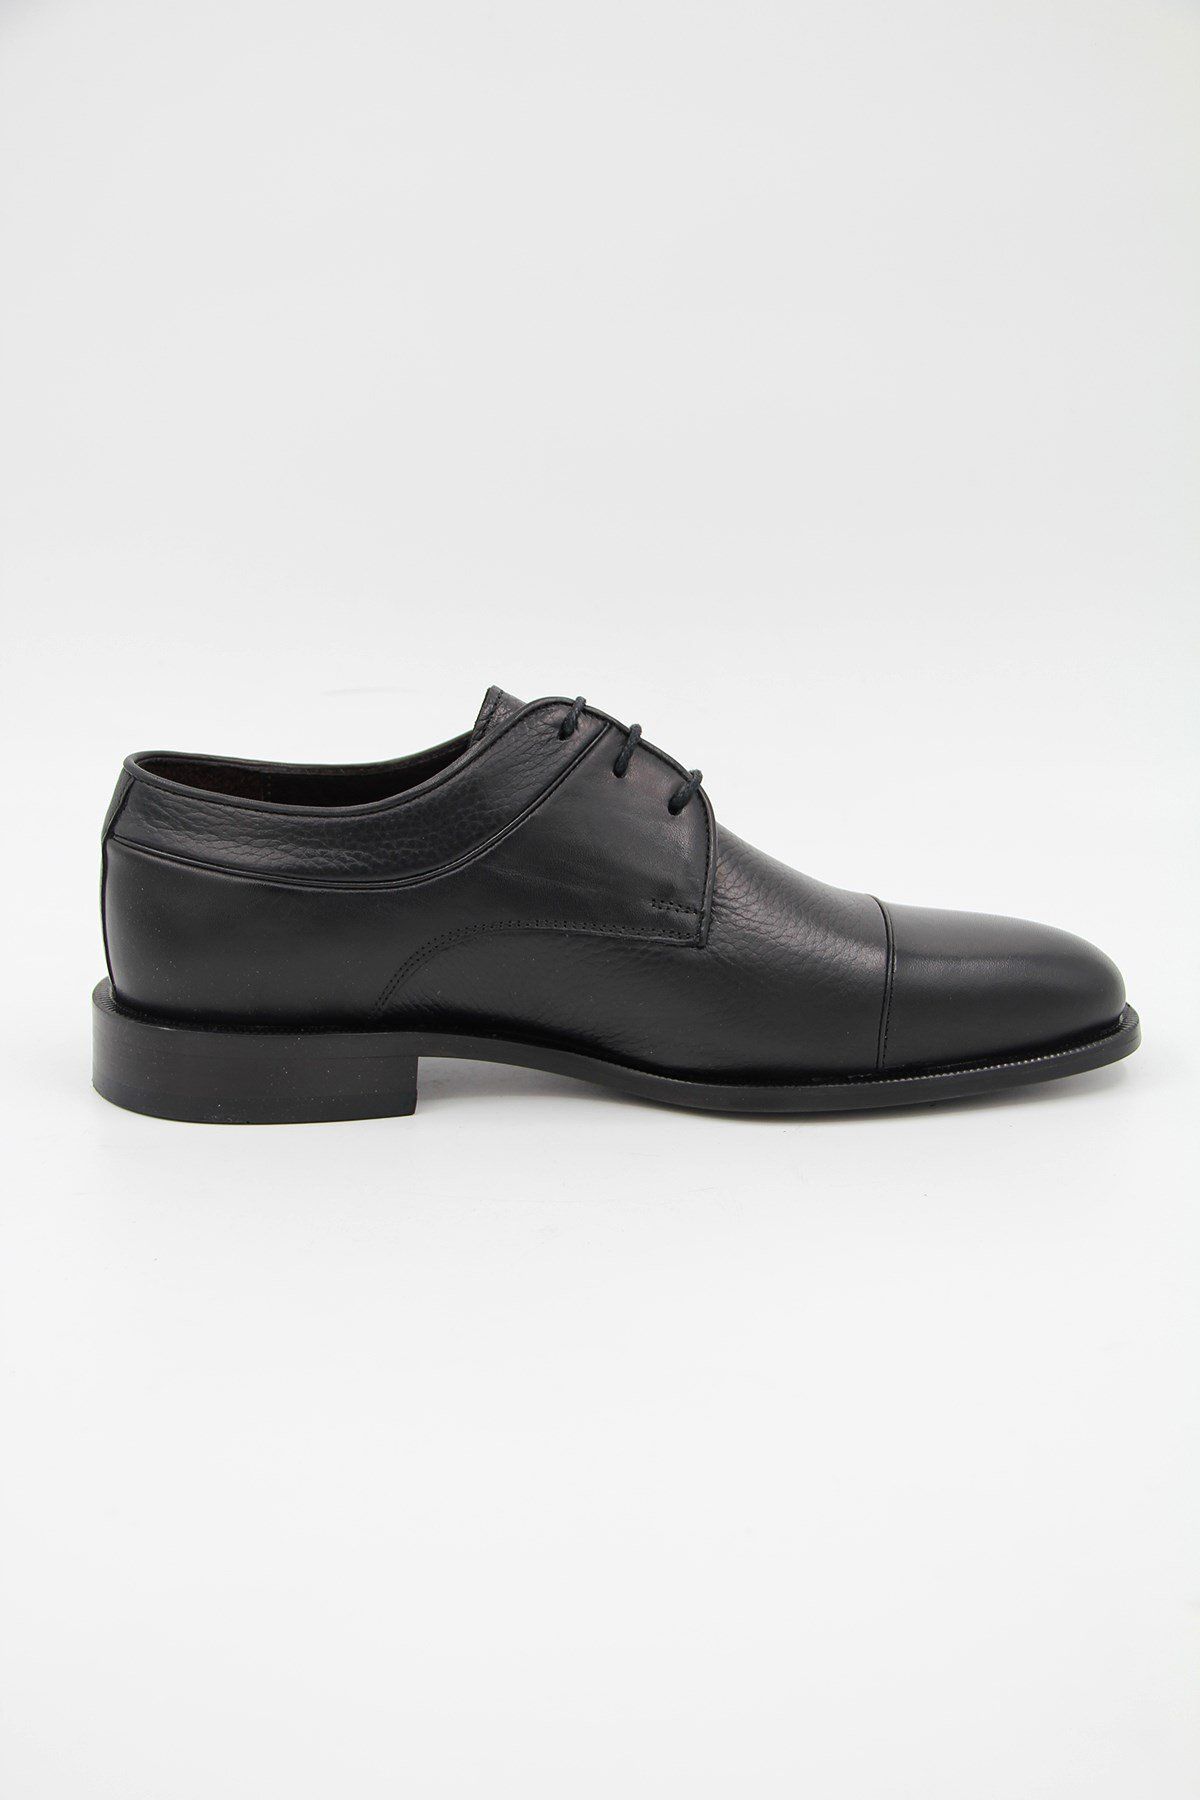 DANACI Danacı 9643 Erkek Klasik Ayakkabı - Siyah